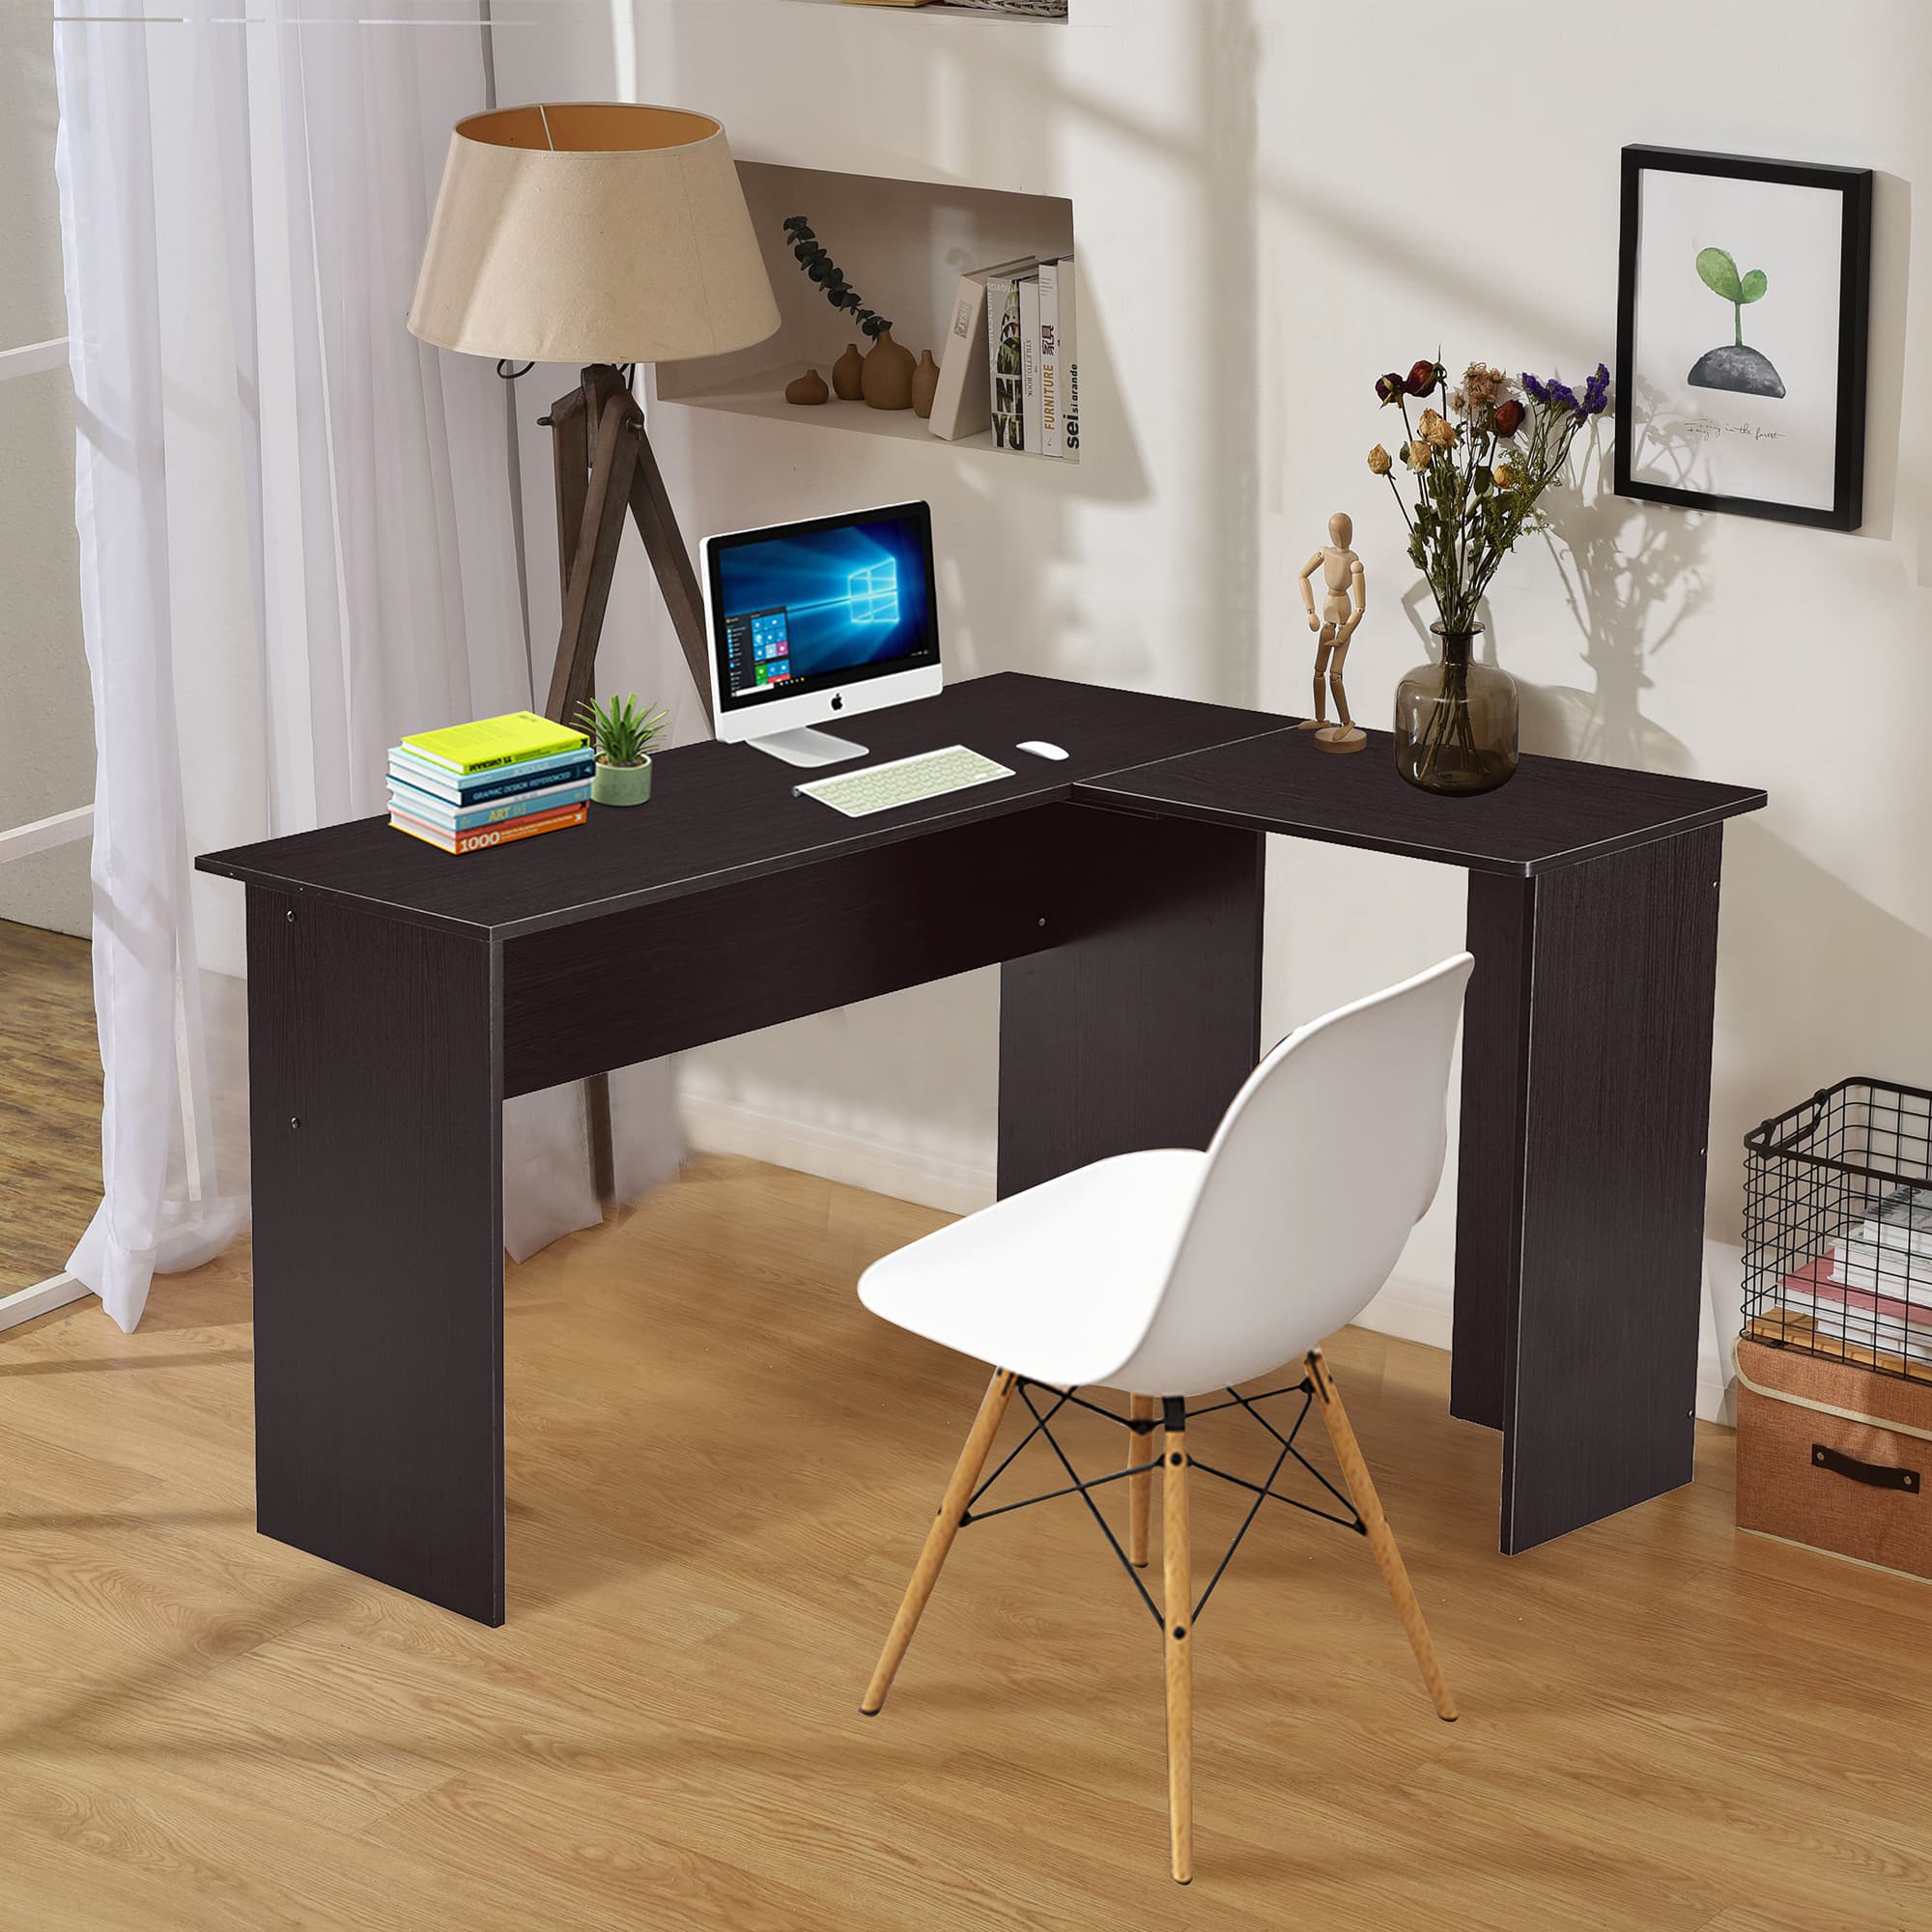 Ivinta Small Corner Computer Desk Modern L Shaped Desk Simplest Gaming Desk